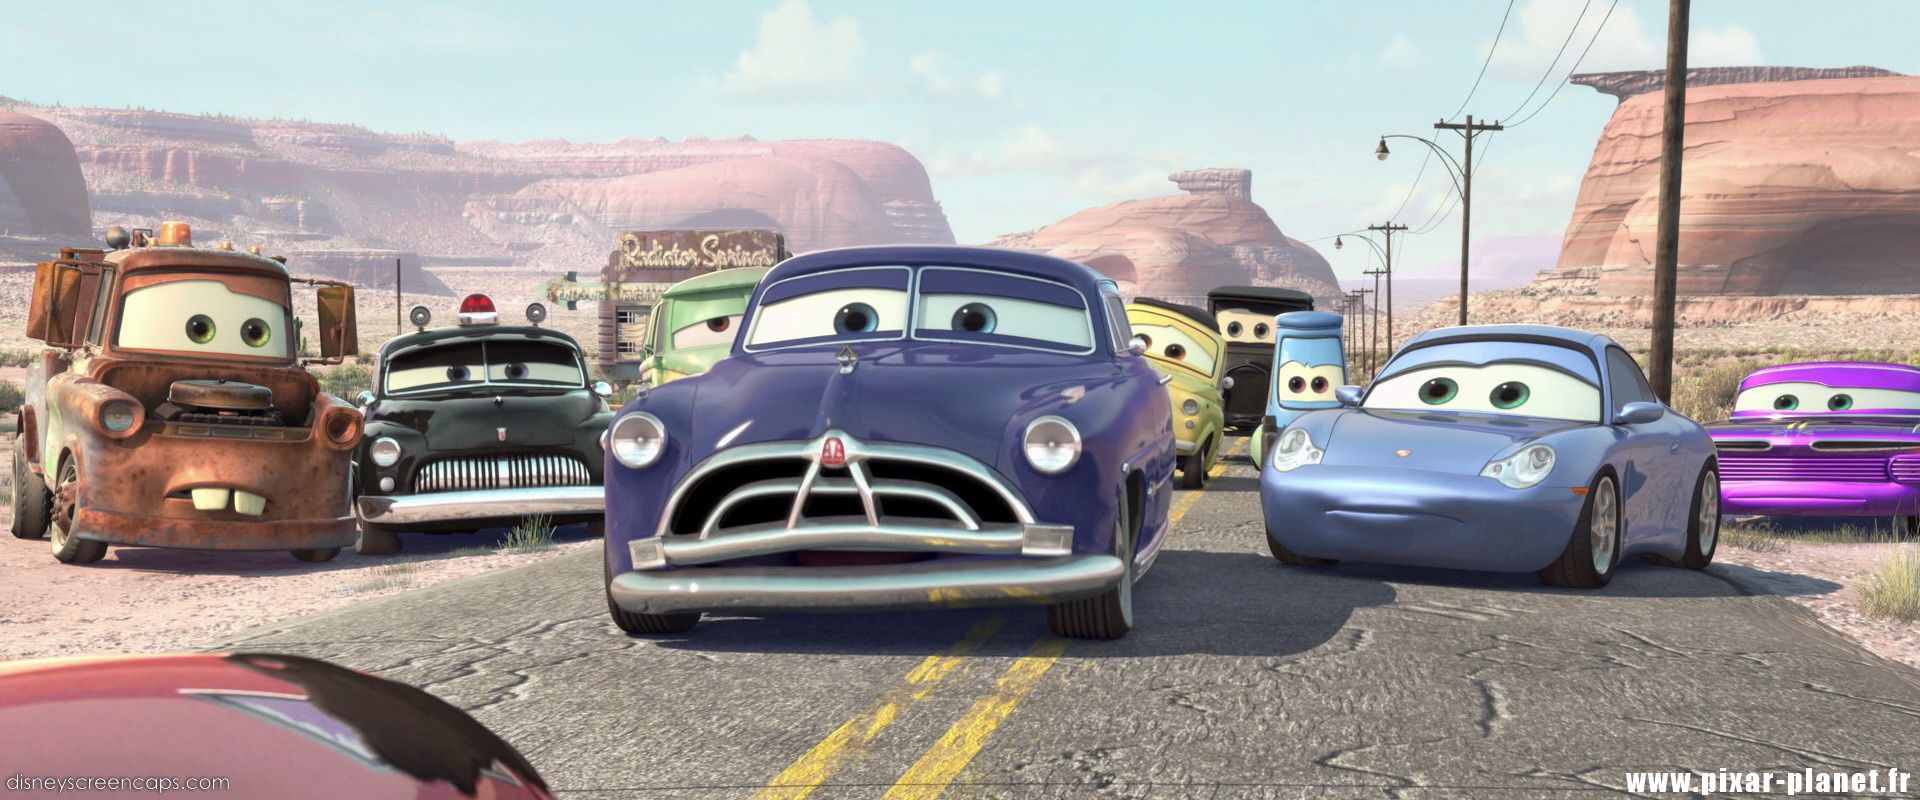 Pixar Cars Quotes. QuotesGram